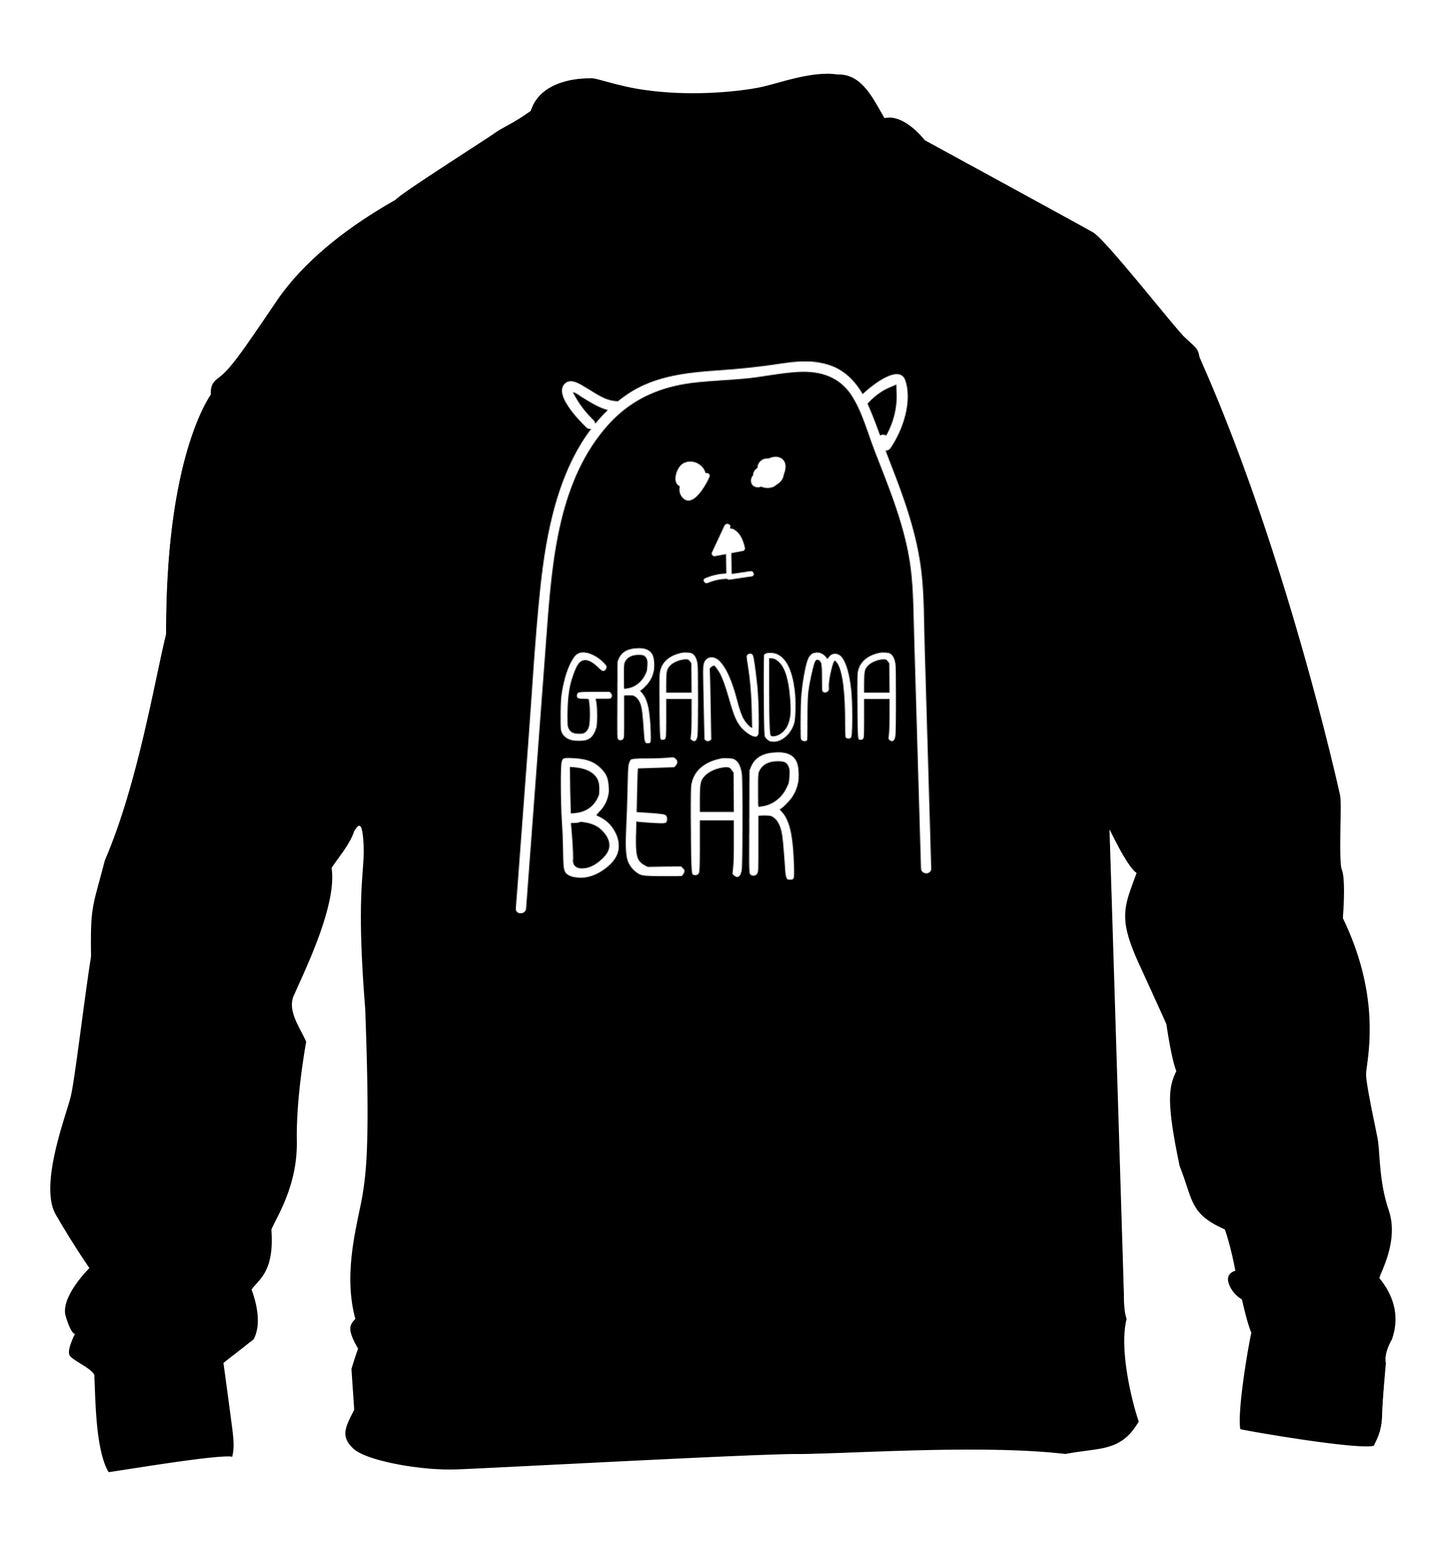 Grandma bear children's black sweater 12-13 Years